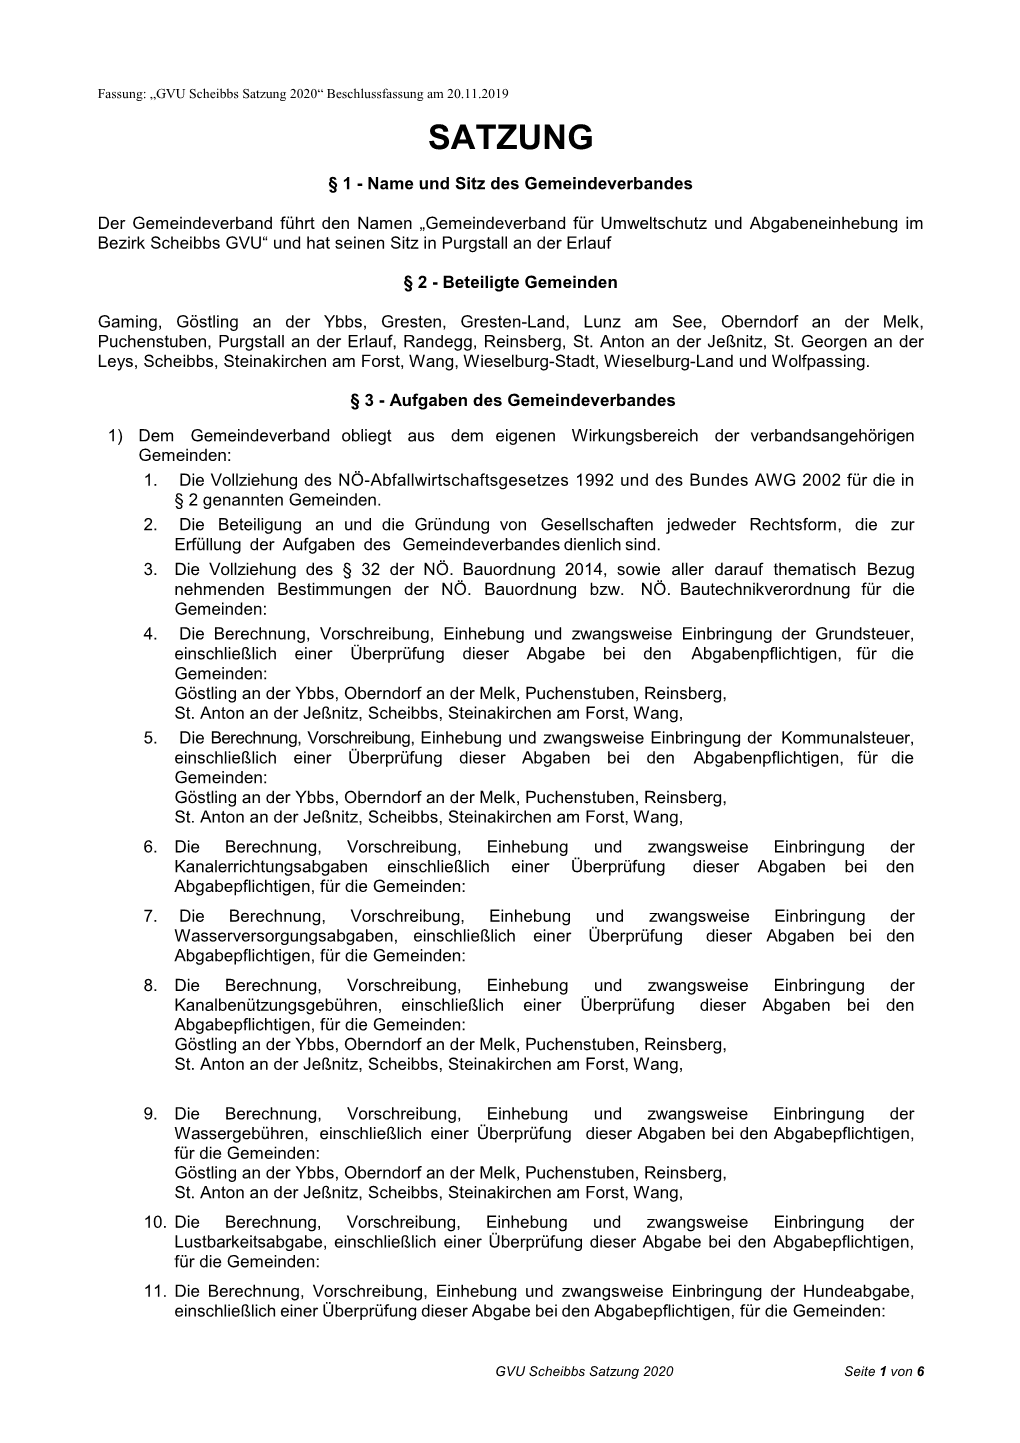 GVU Scheibbs Satzung 2020“ Beschlussfassung Am 20.11.2019